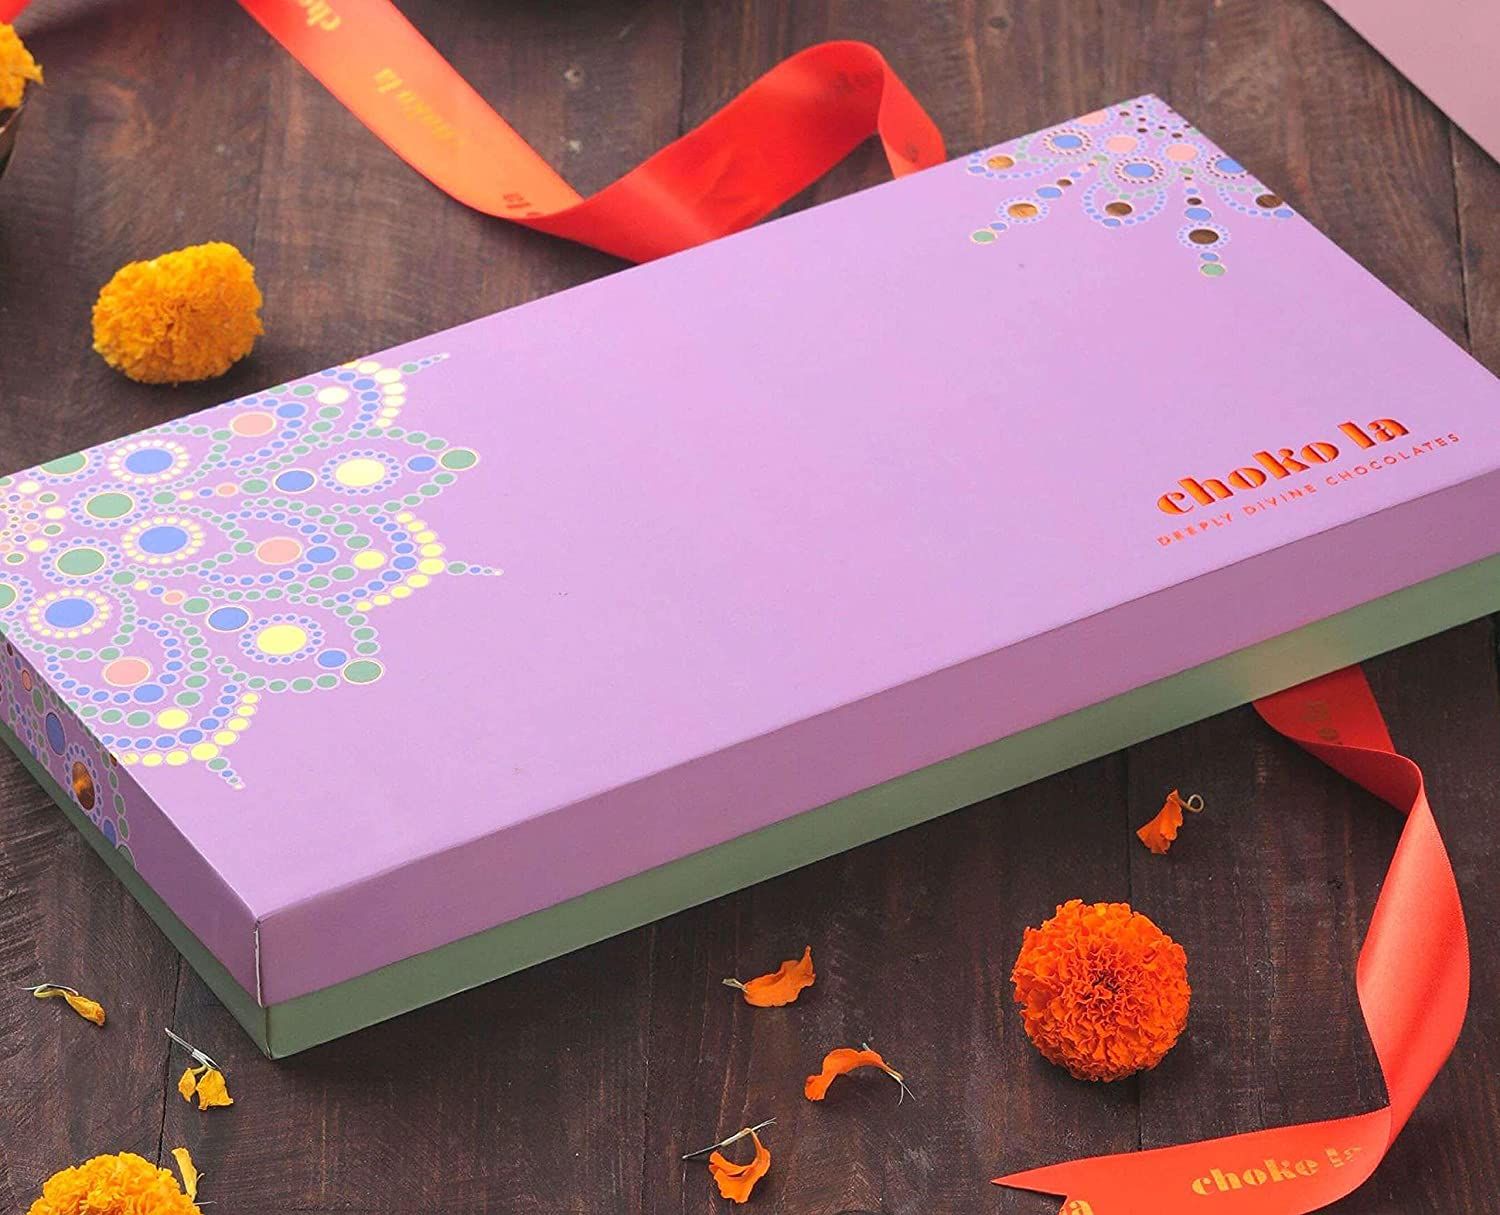 Chokola Diwali Harmony Premium Chocolate Image